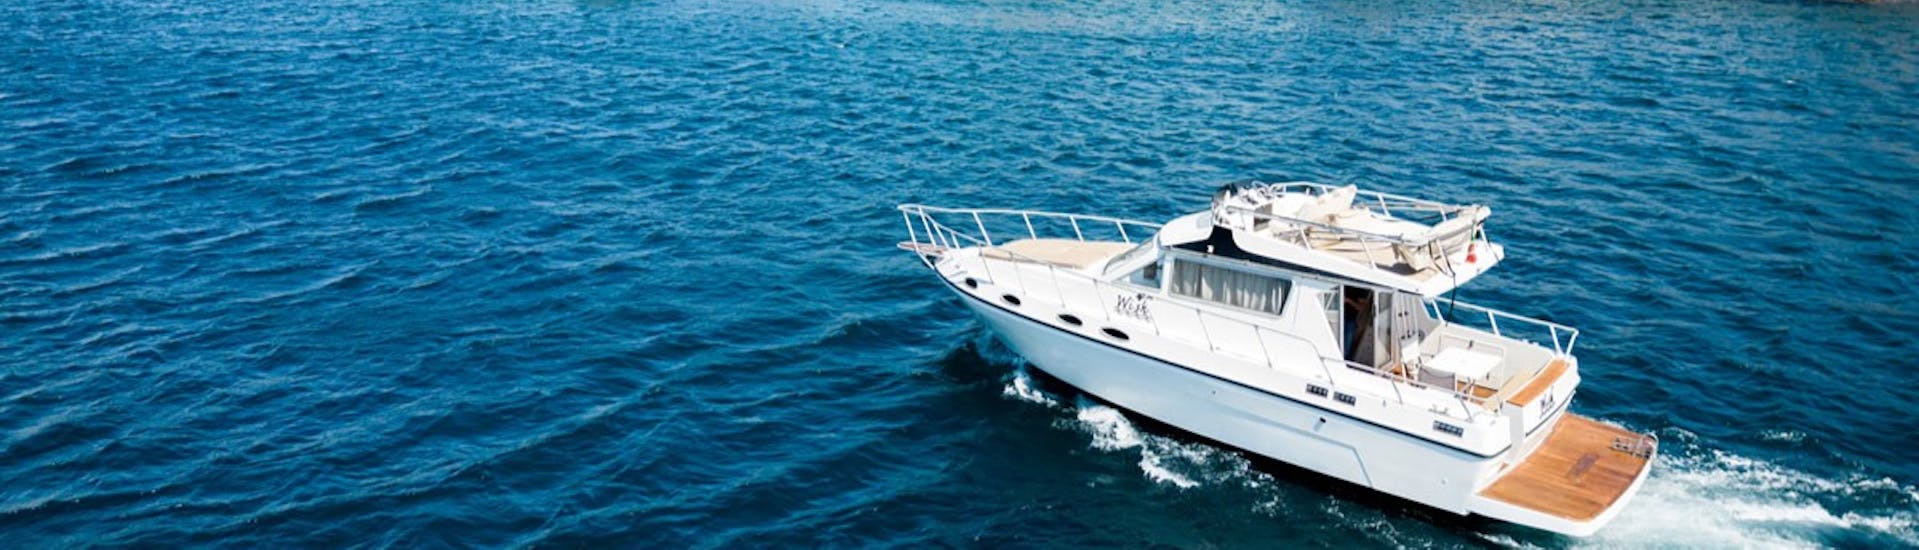 Le bateau Wish pendant l'Excursion privée en bateau de Catane à Brucoli avec Apéritif avec Wish Boat Rent Catania.